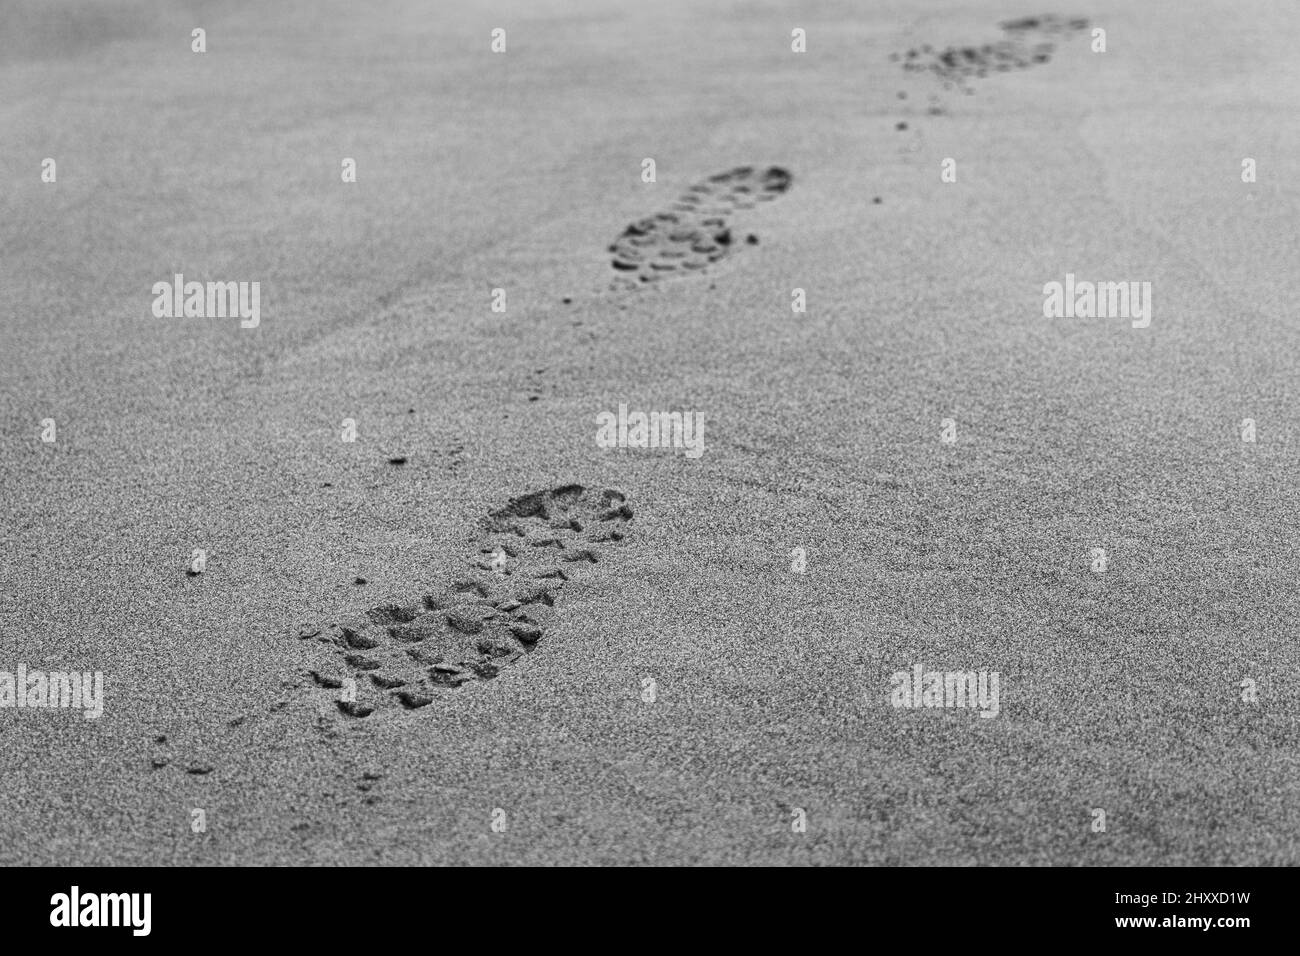 Gros plan en niveaux de gris des marques de chaussures sur le sable. Banque D'Images